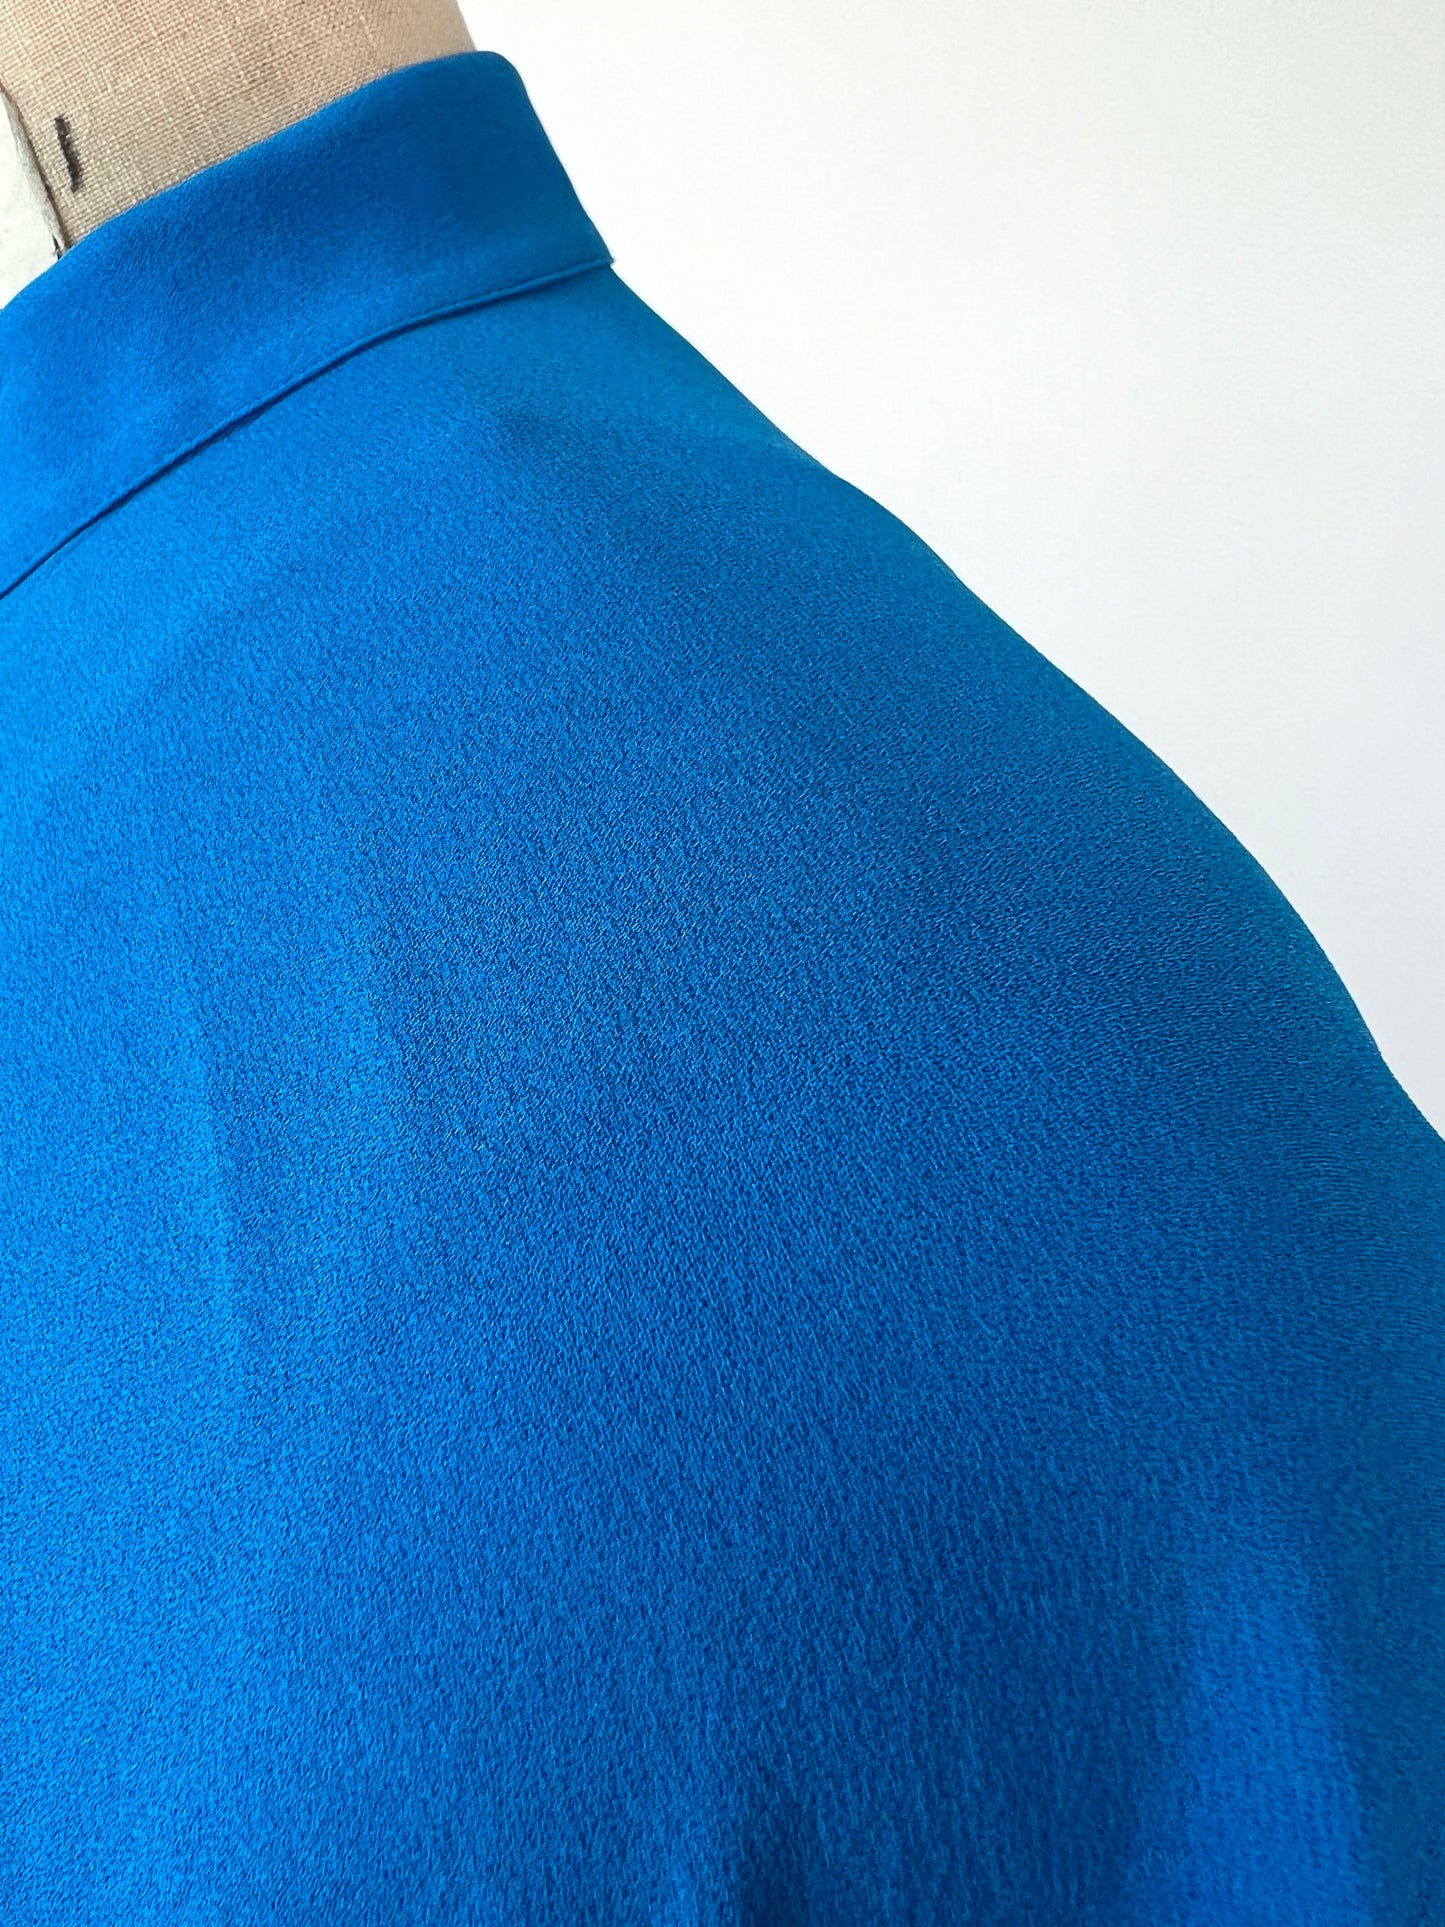 Tunique cape en soie bleu roi (M)